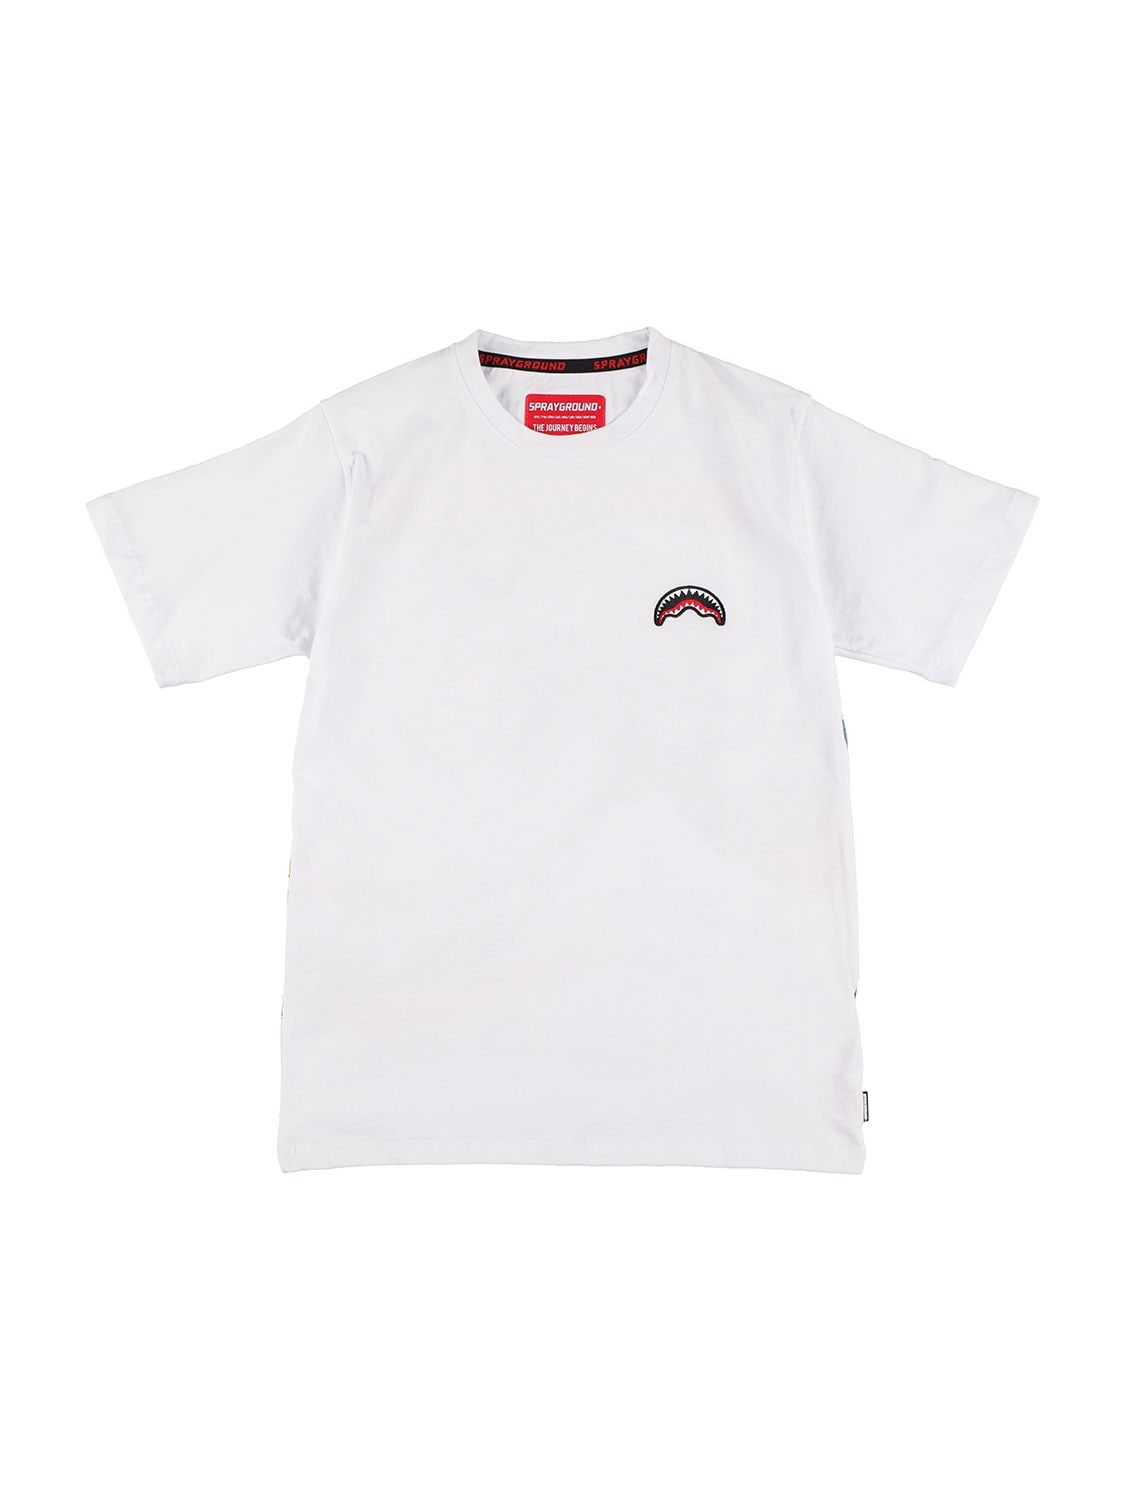 Sprayground Kids' Wave Print Cotton Jersey T-shirt In White